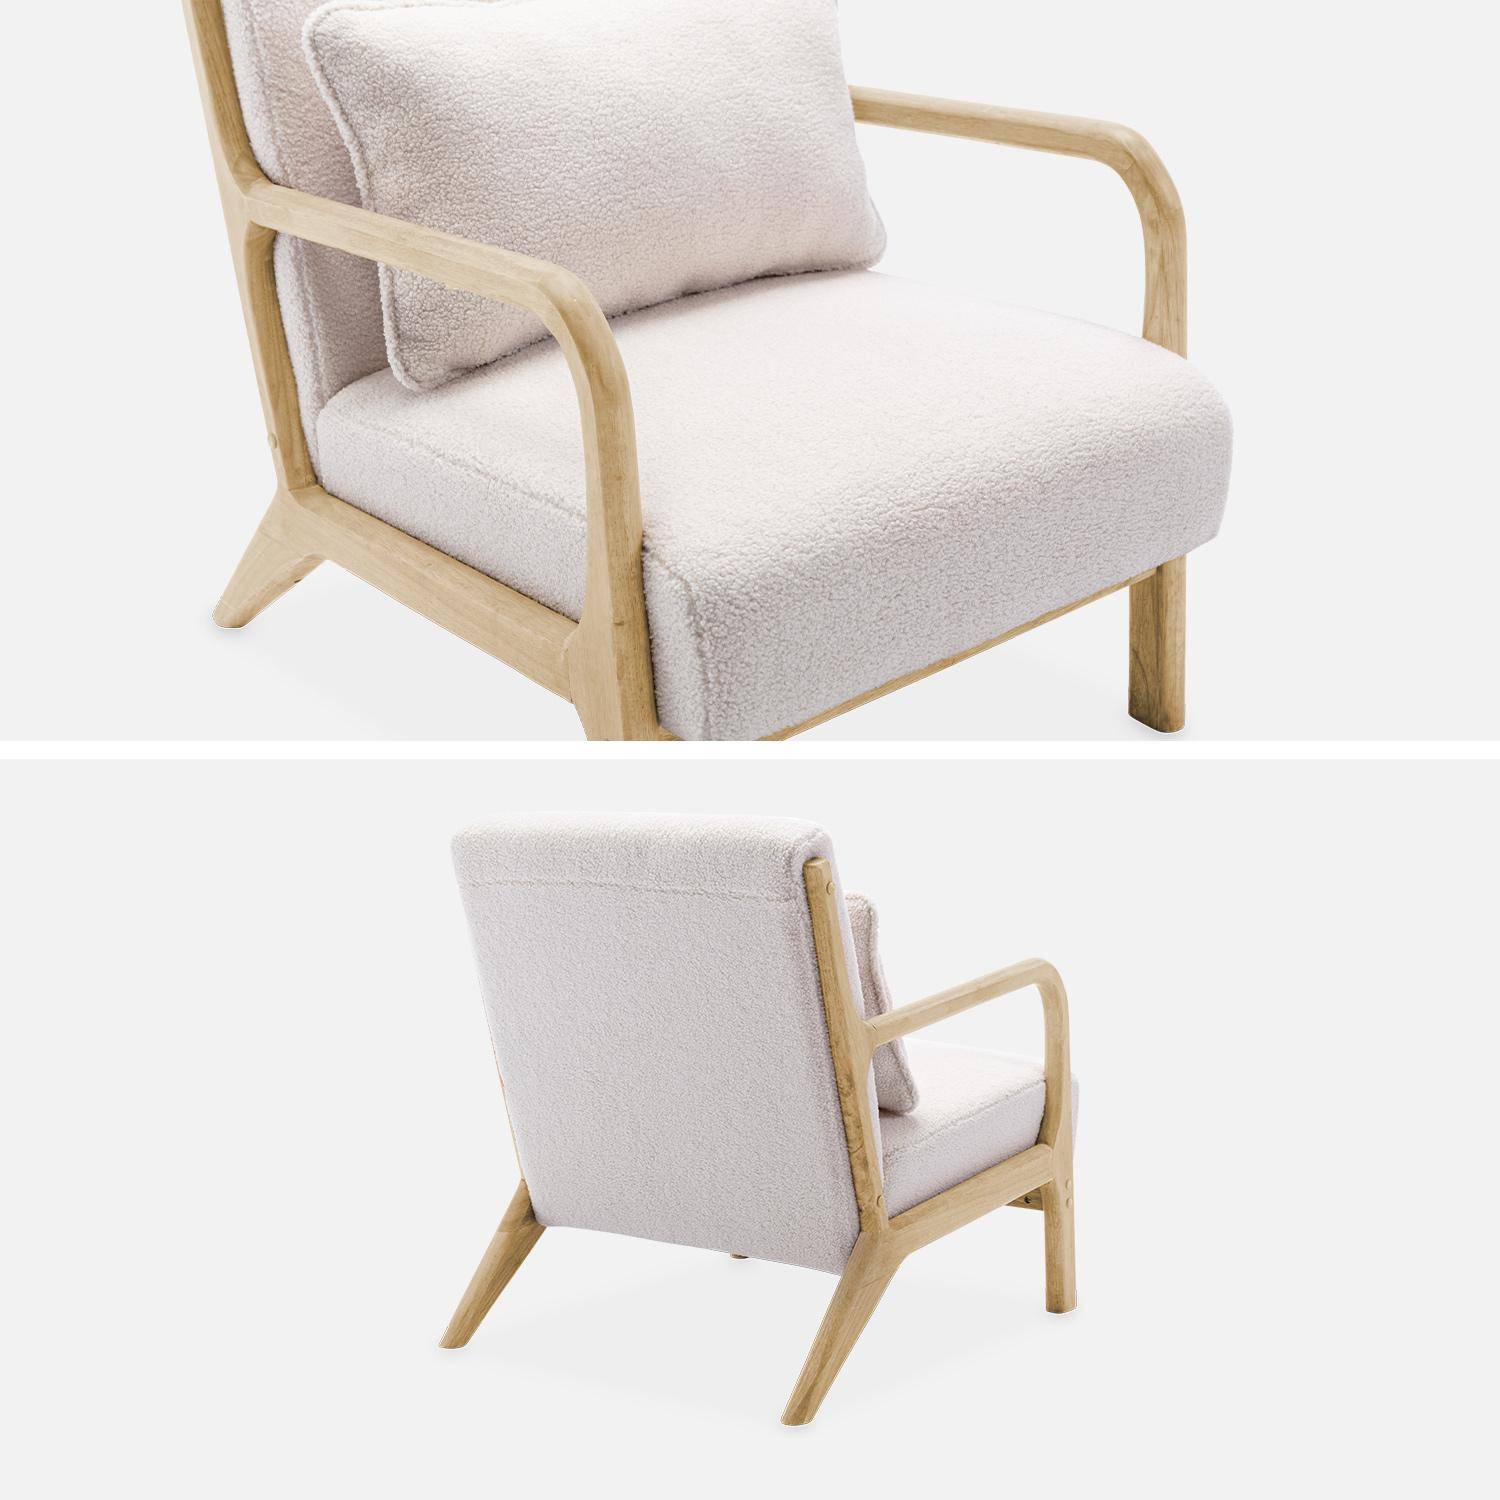 Weißer Sessel, Holz und Stoff, 1-Sitz, skandinavischer Stil, solides Holzgestell, bequeme Sitzfläche Photo6